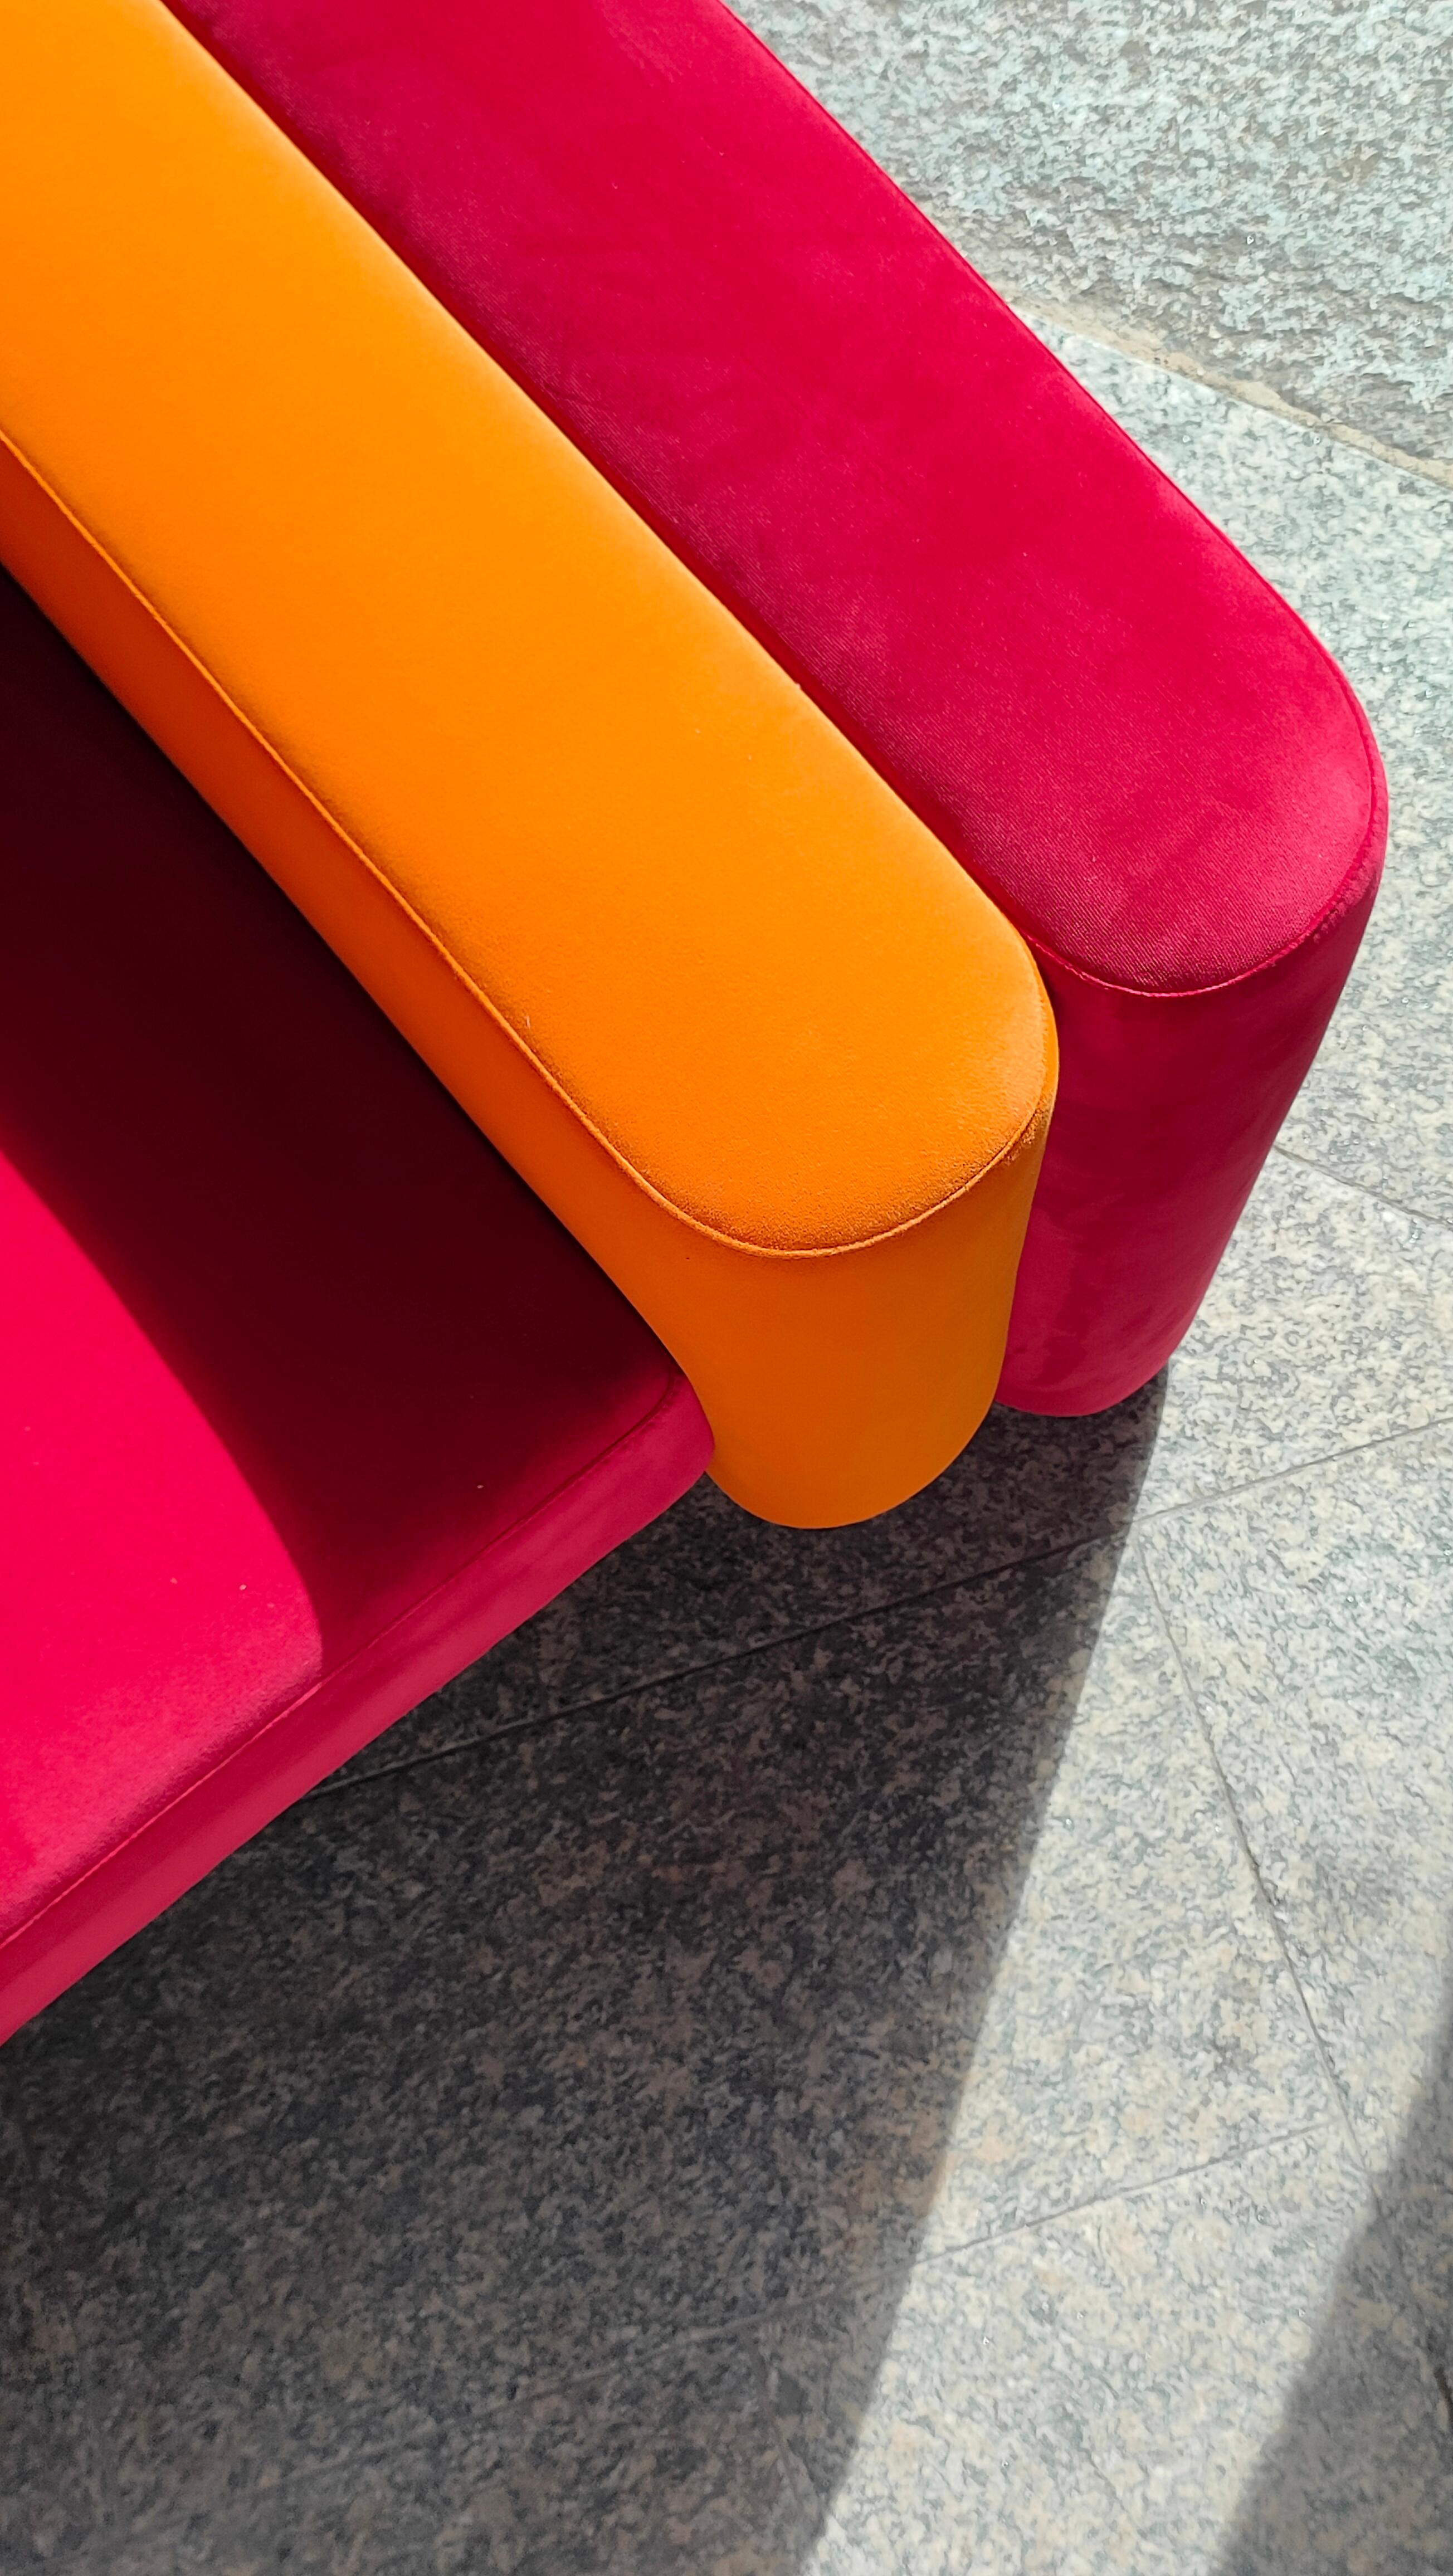 Portuguese Mid-Centurye Modern Armchair Upholstered in Orange & Dark Red Velvet For Sale